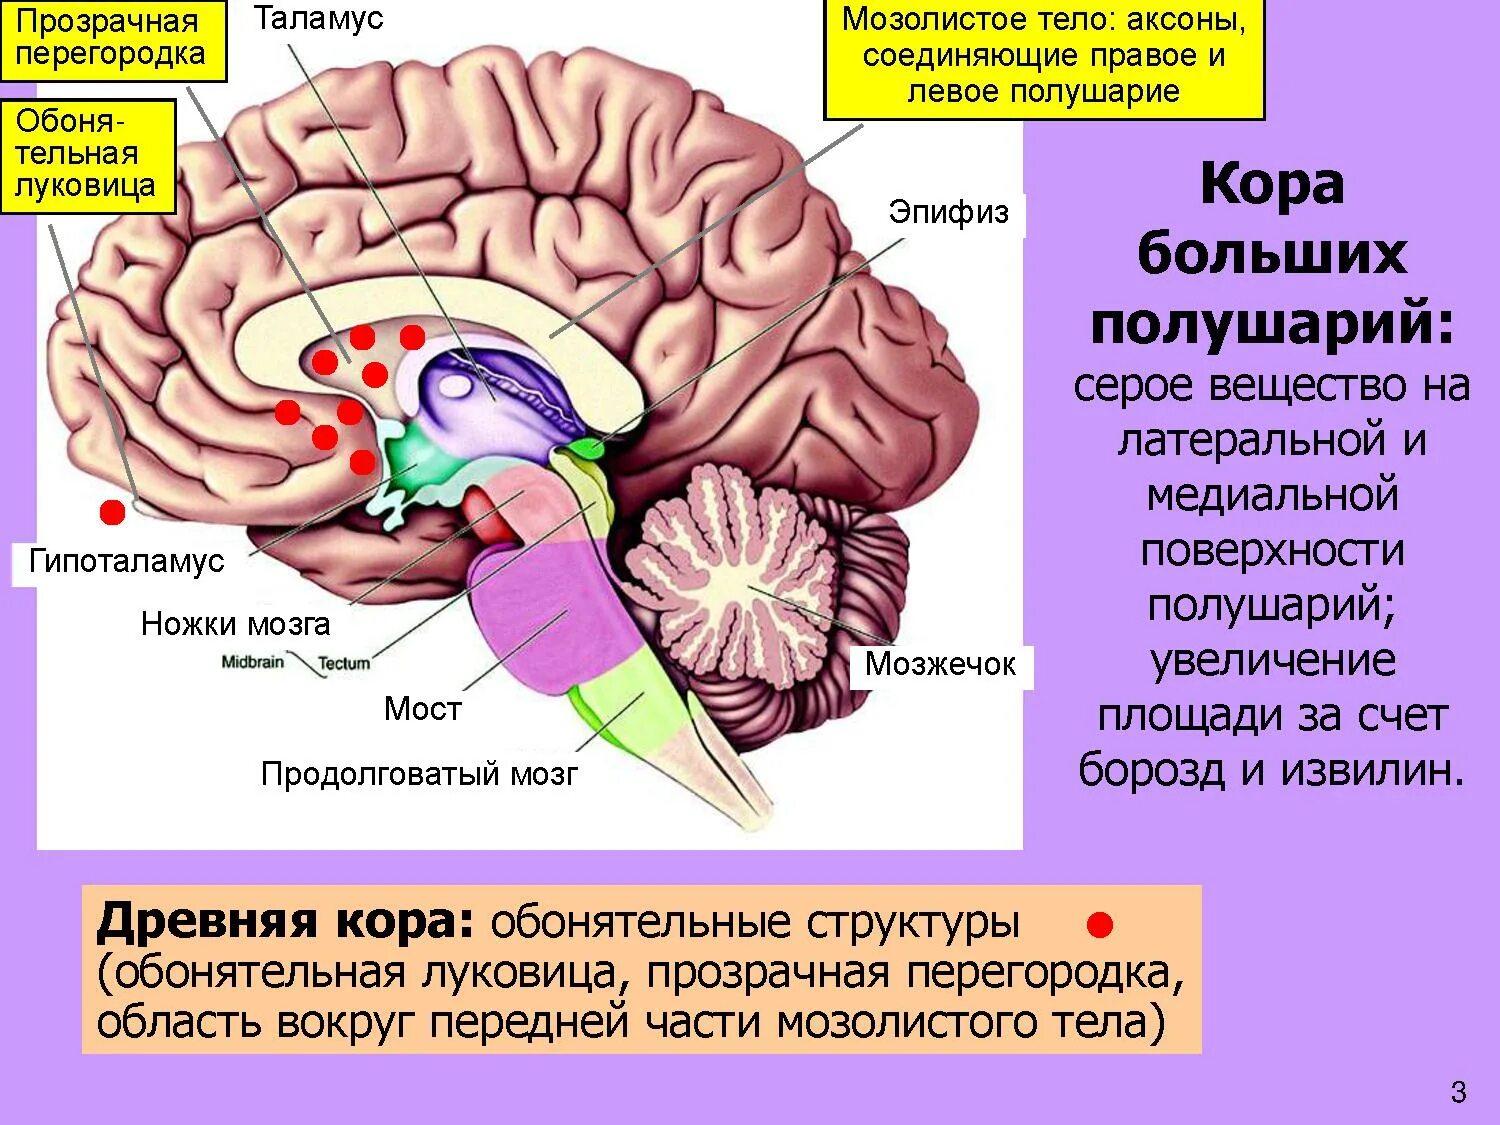 Мозолистое тело конечного мозга функции. Прозрачная перегородка головного мозга анатомия. Строение мозолистого тела головного мозга. Таламус, гипоталамус, мост, мозжечок, продолговатый мозг..